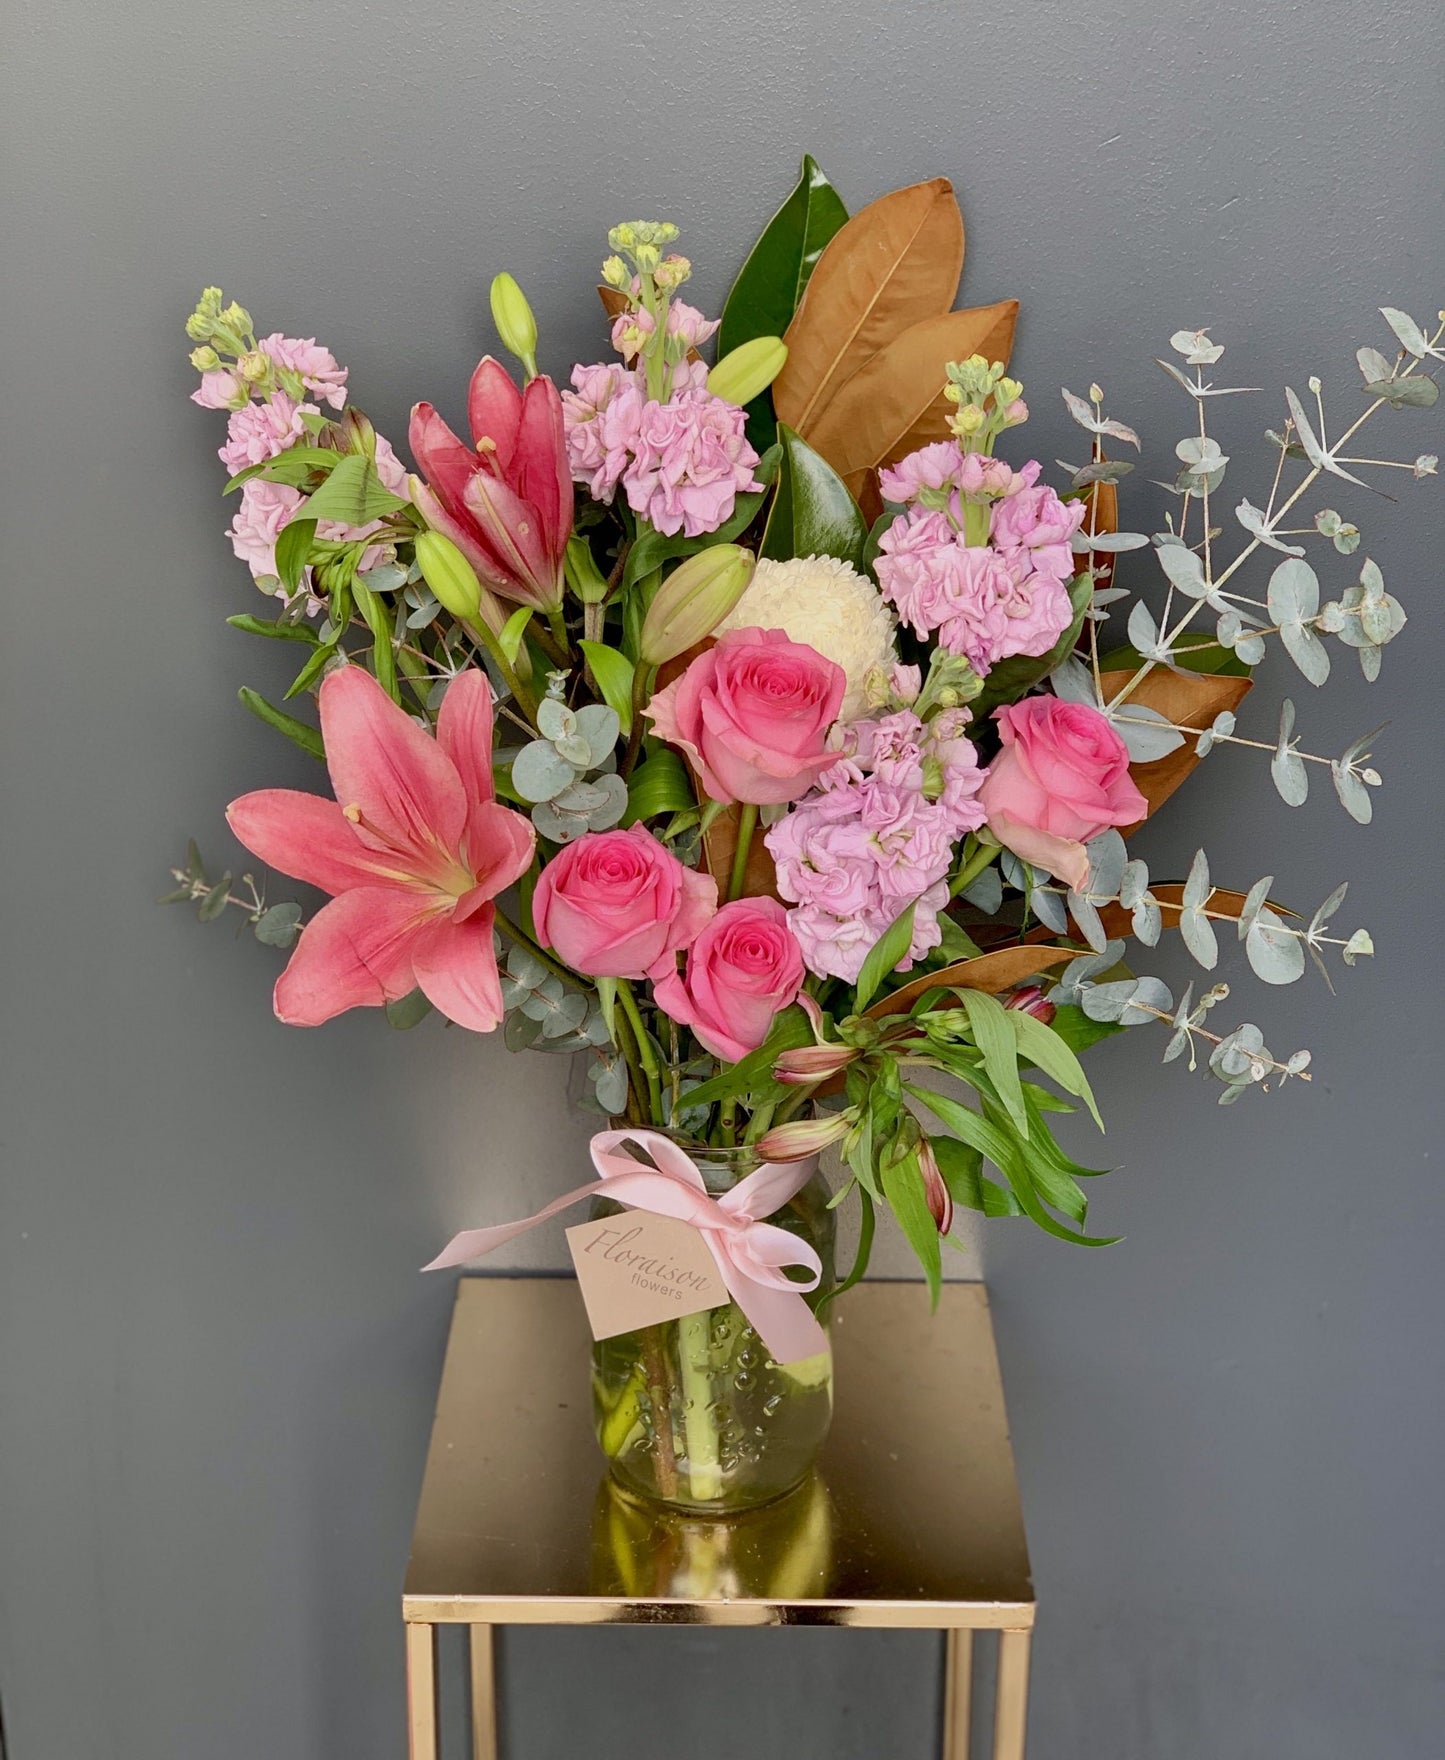 Florist Choice Flower Arrangement in a Jar Deluxe (Light Pink Theme)